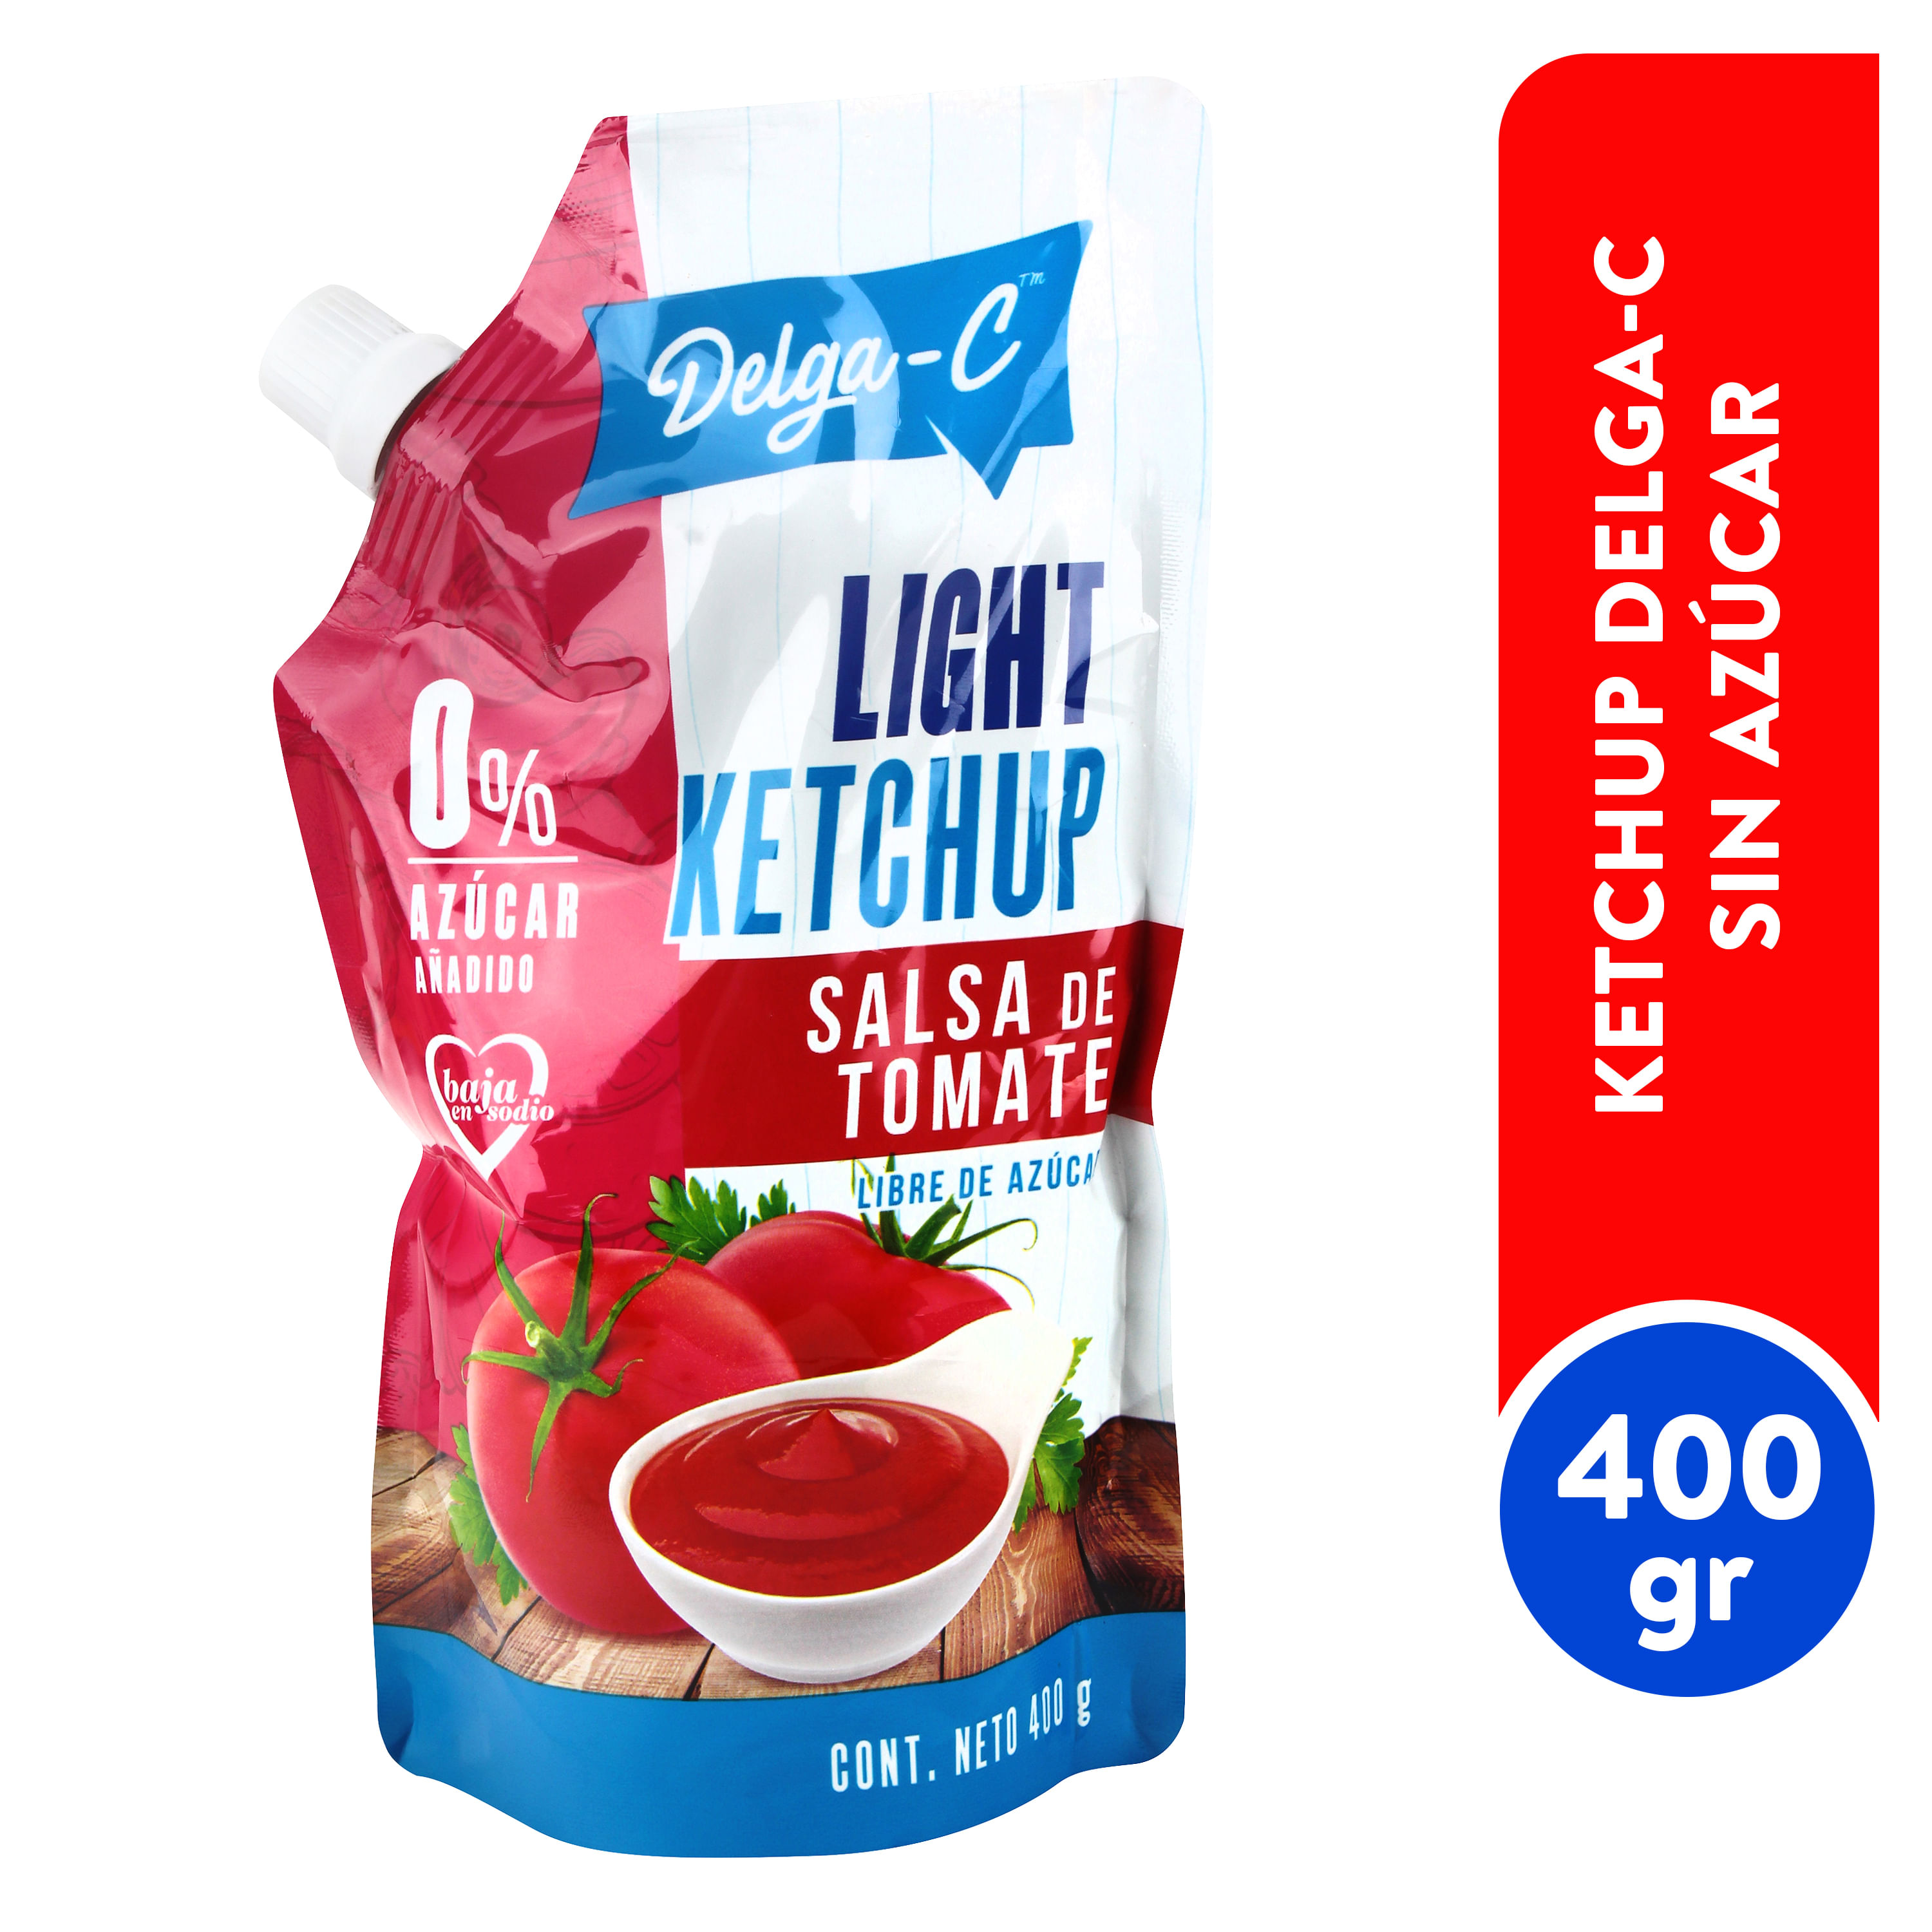 Salsa-Delga-C-Ketchup-Sin-Az-car-Doypack-400gr-1-37283